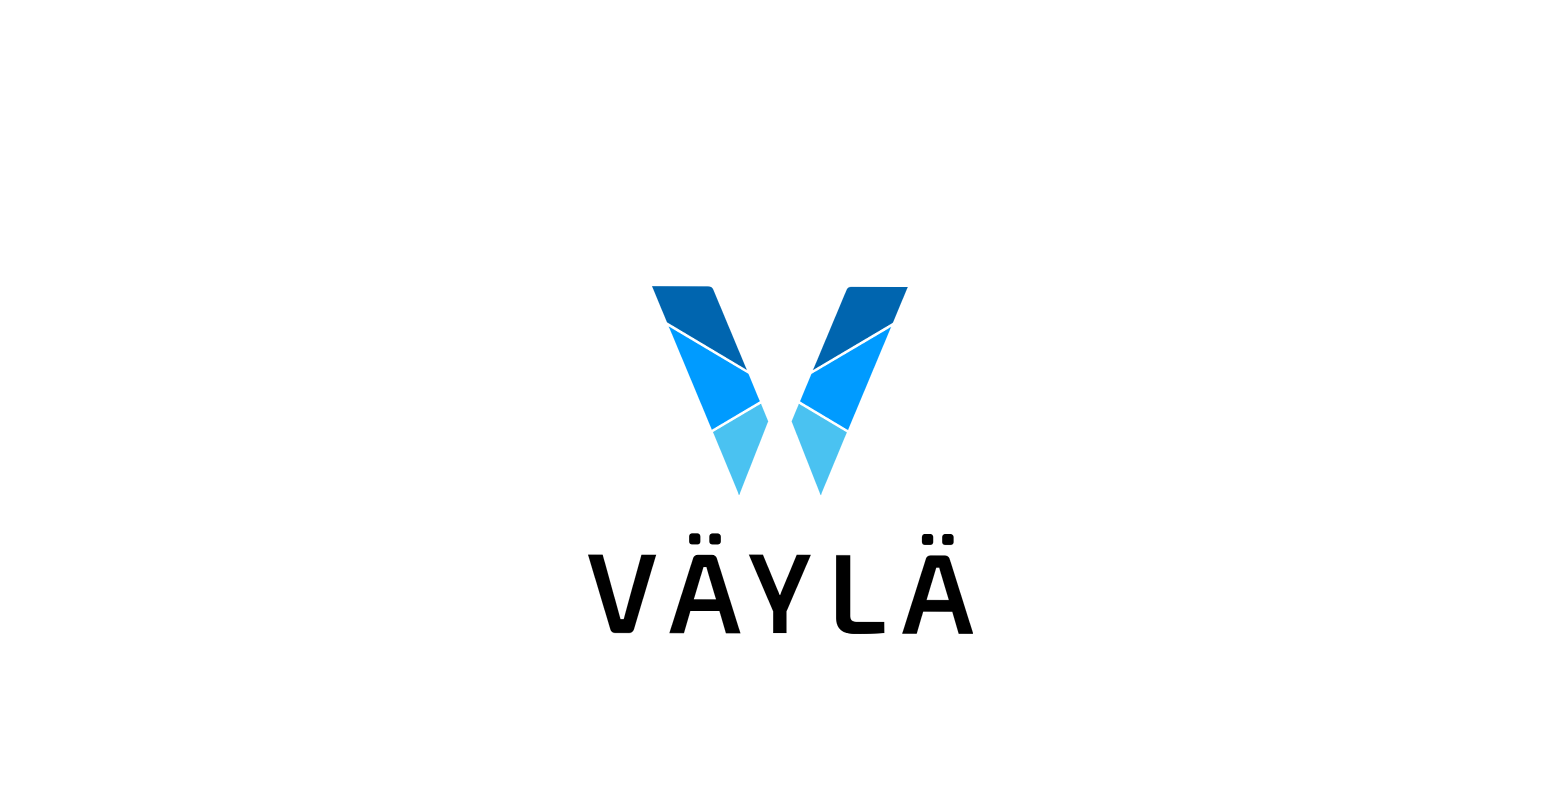 Väylä/Finnish Transport Infrastructure Agency logo